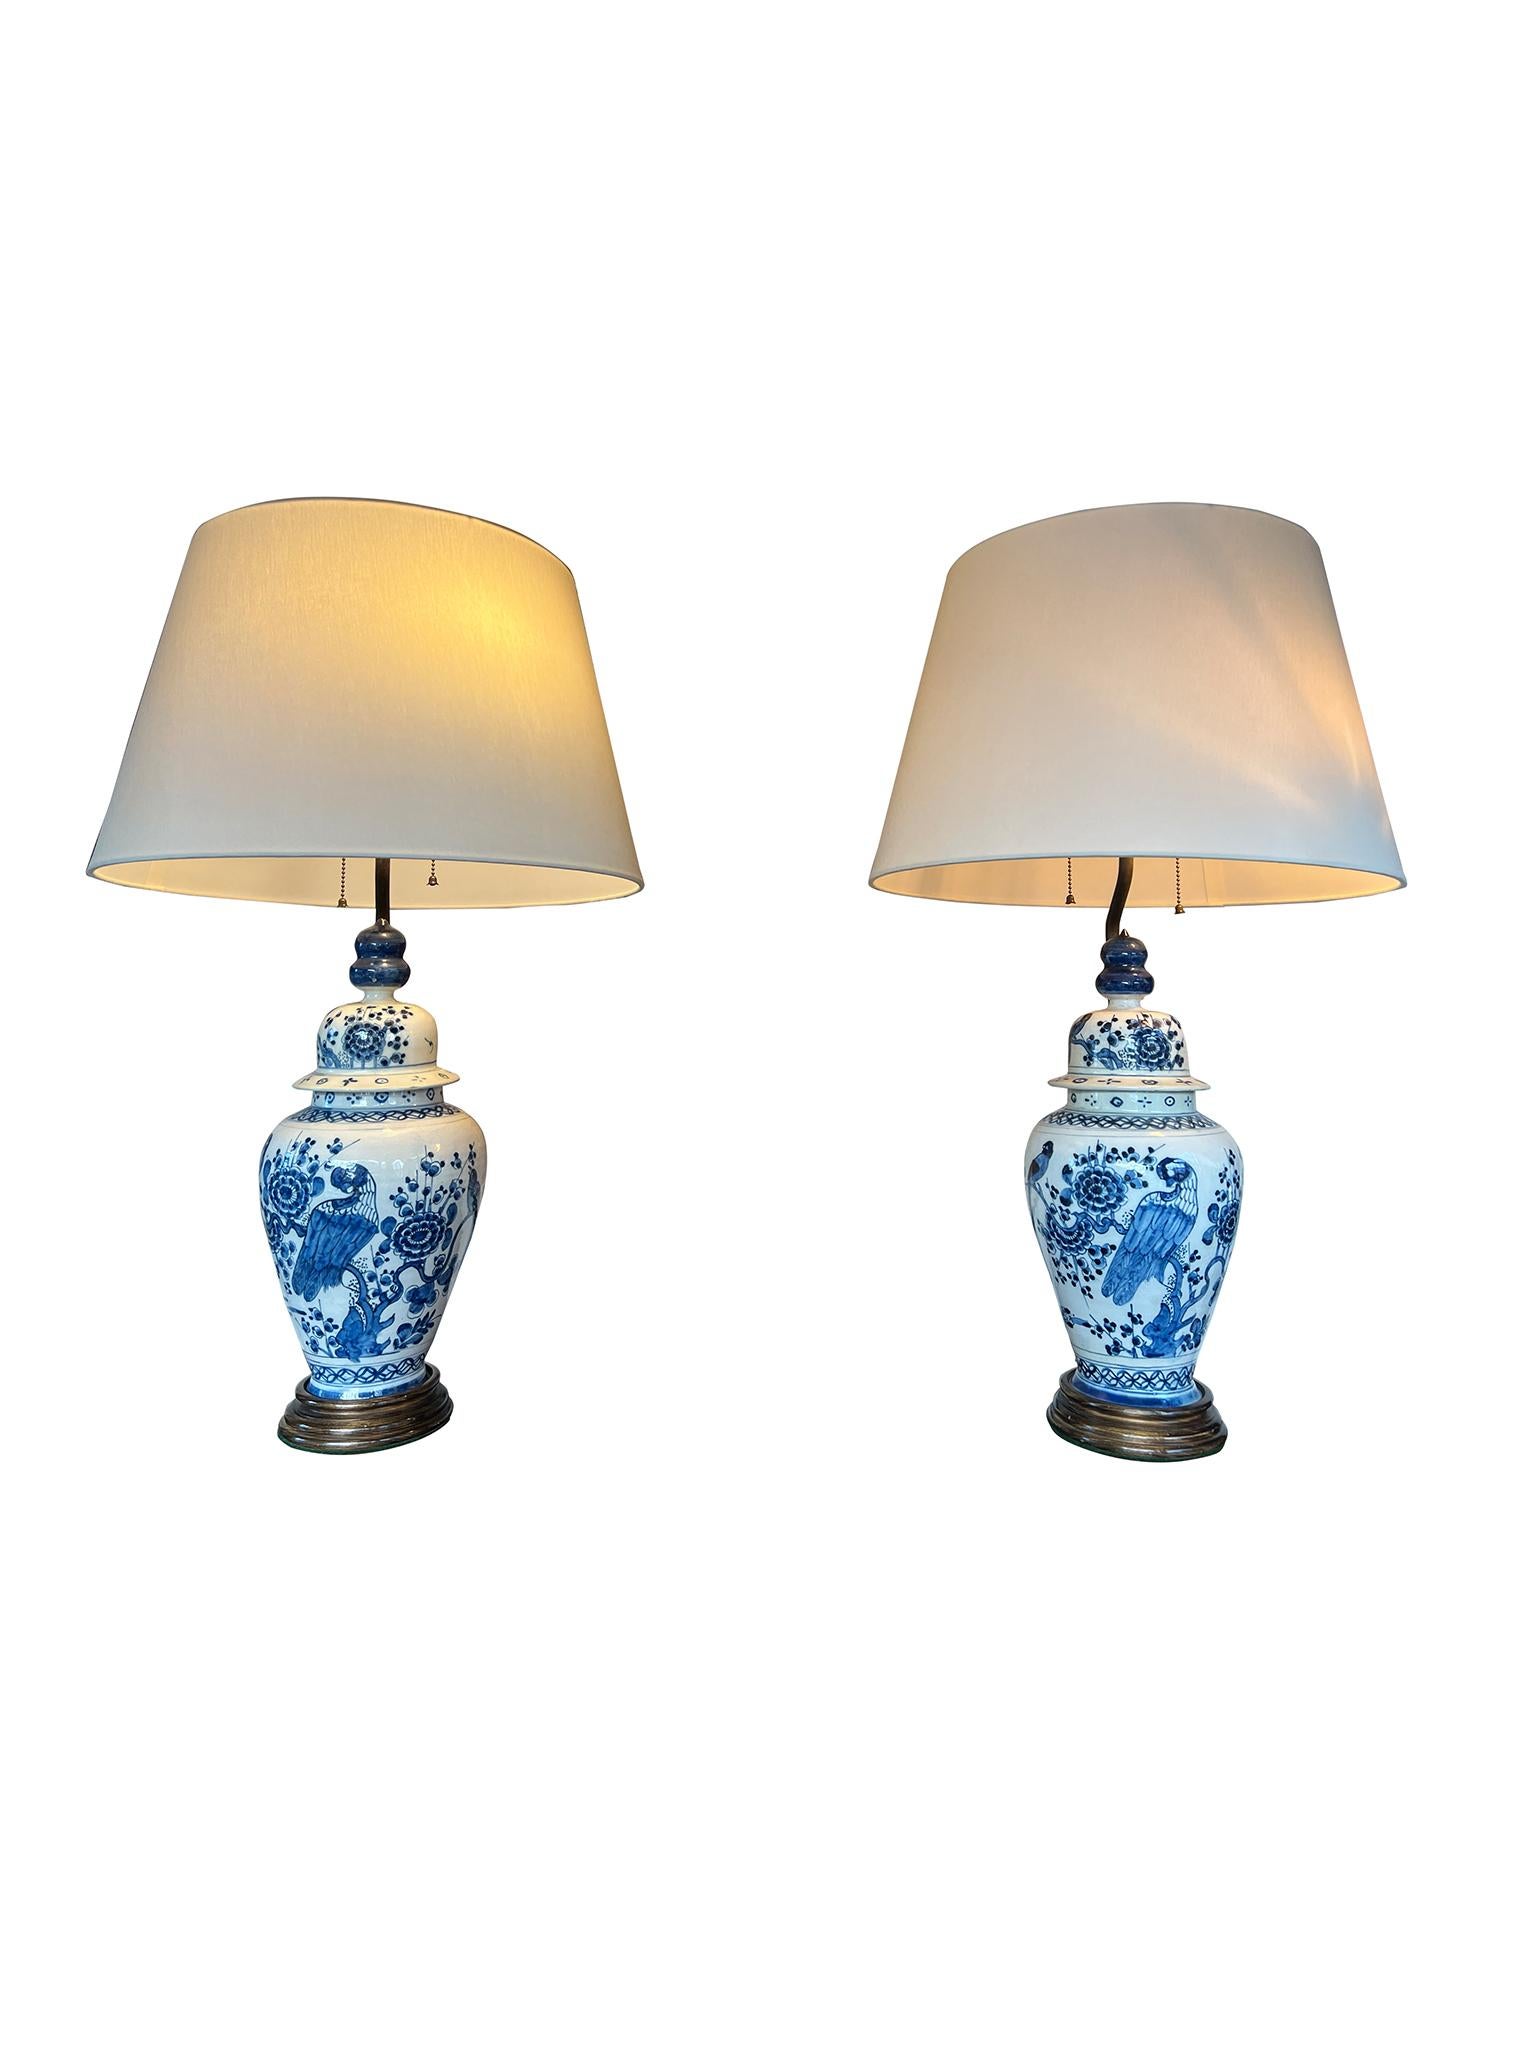 Charmantes Paar Delfter Porzellan-Tischlampen im Stil chinesischer Ingwer- oder Urnenlampen mit Deckel. Die Lampen sind mit dem Bild eines auf einem Baum sitzenden Vogels verziert, der von floralen Elementen umgeben ist. Die Lampen sind mit neuen